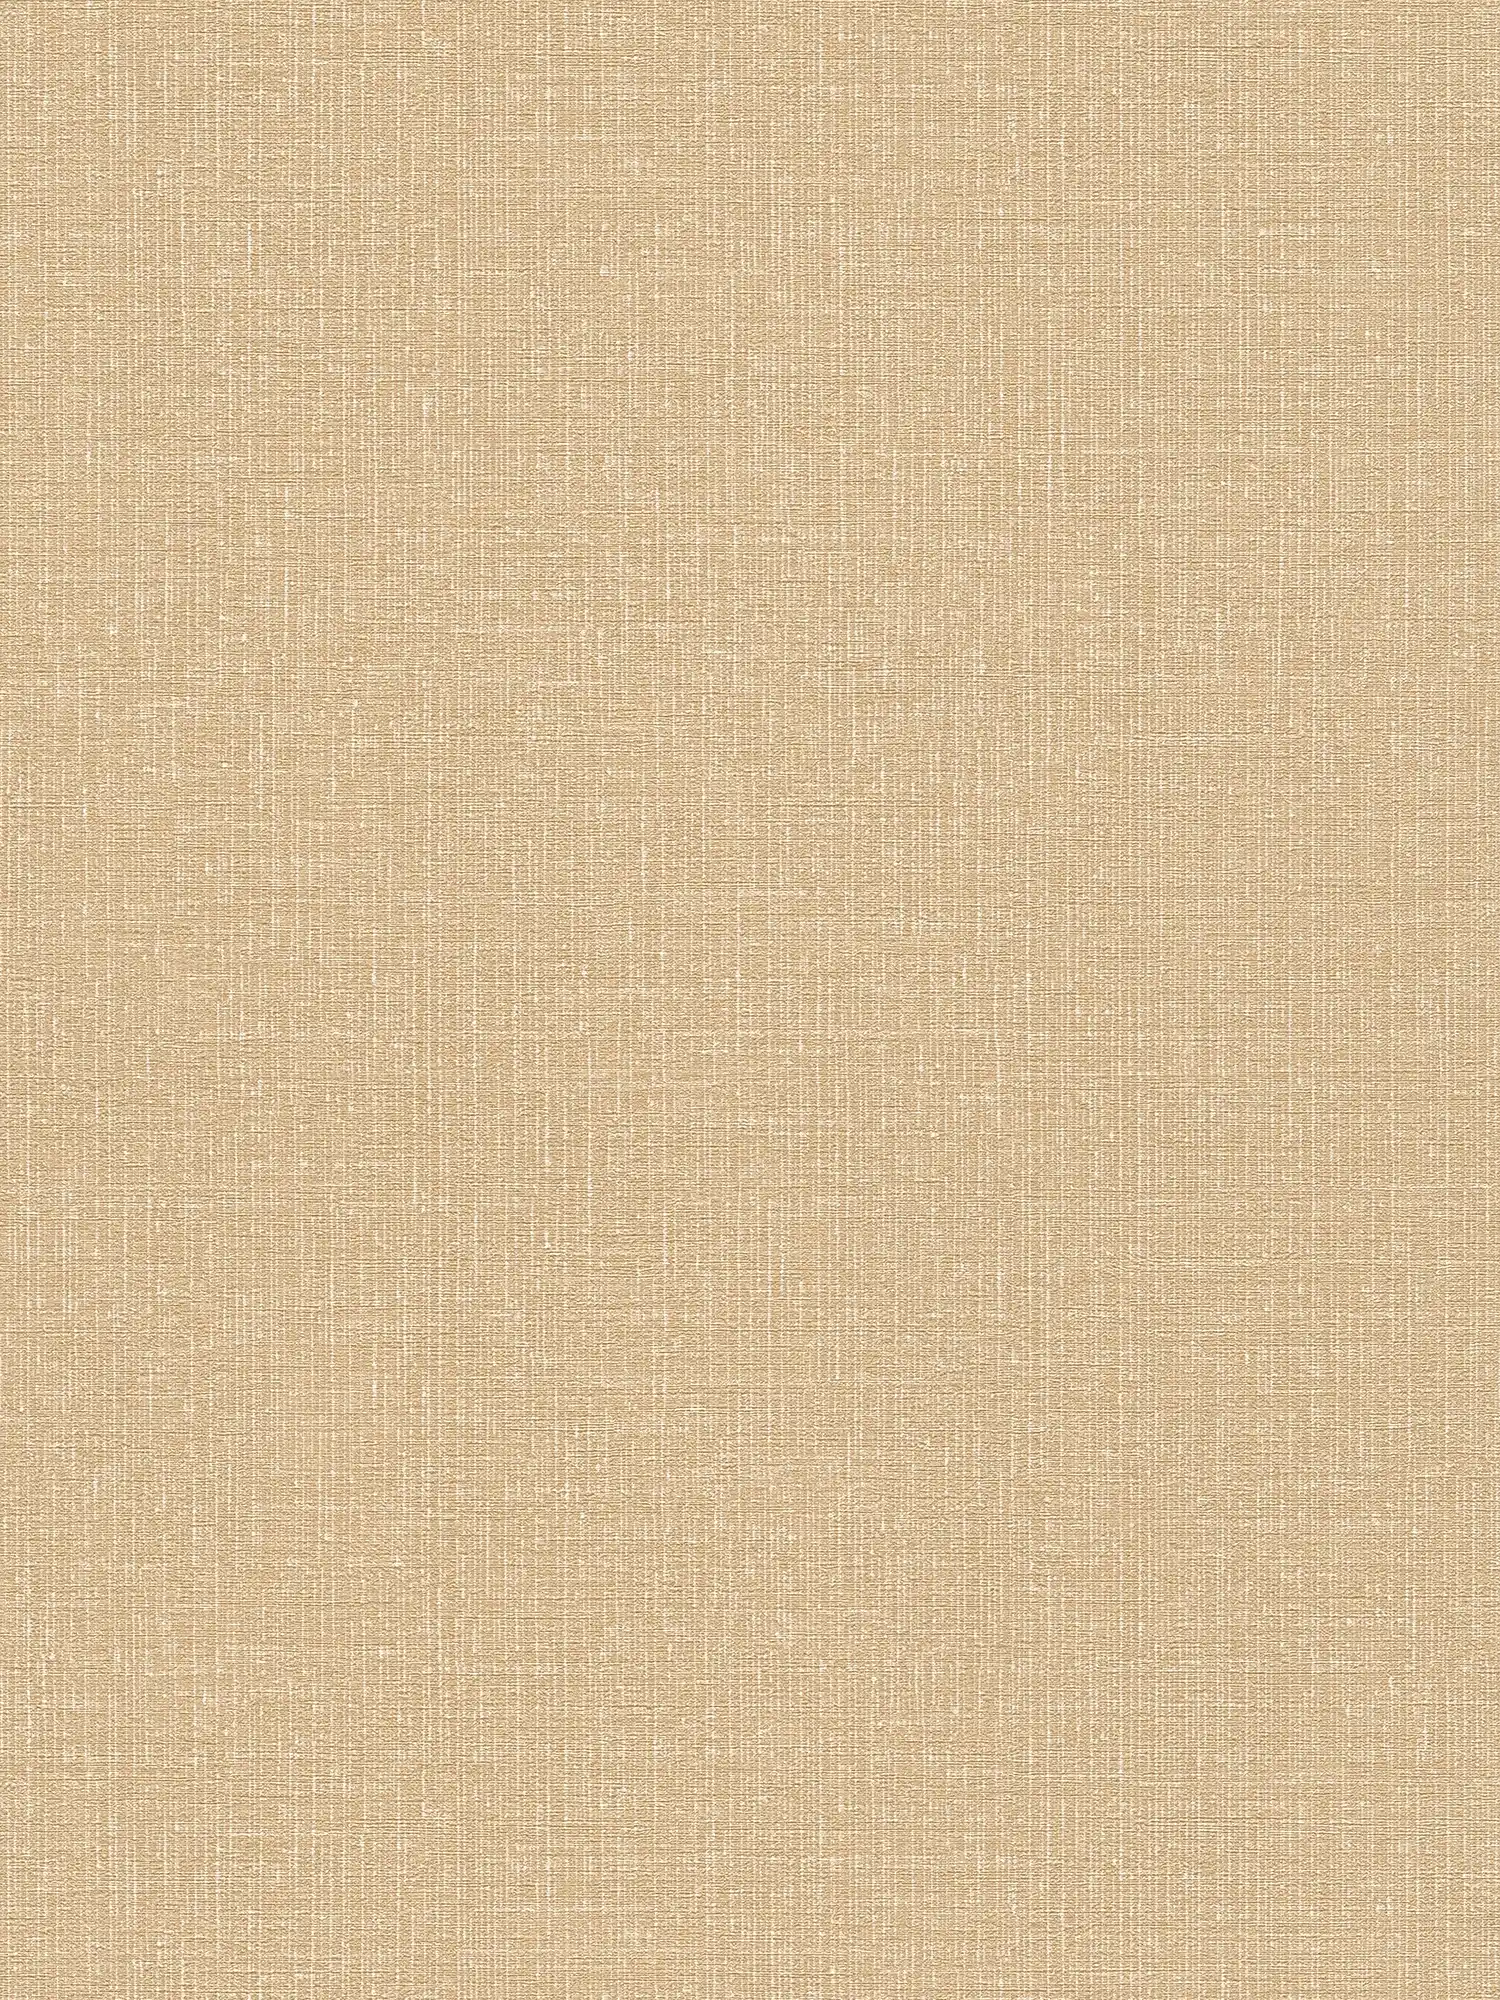 Carta da parati effetto lino in tessuto non tessuto beige-oro con effetto texture - beige, metallizzata
